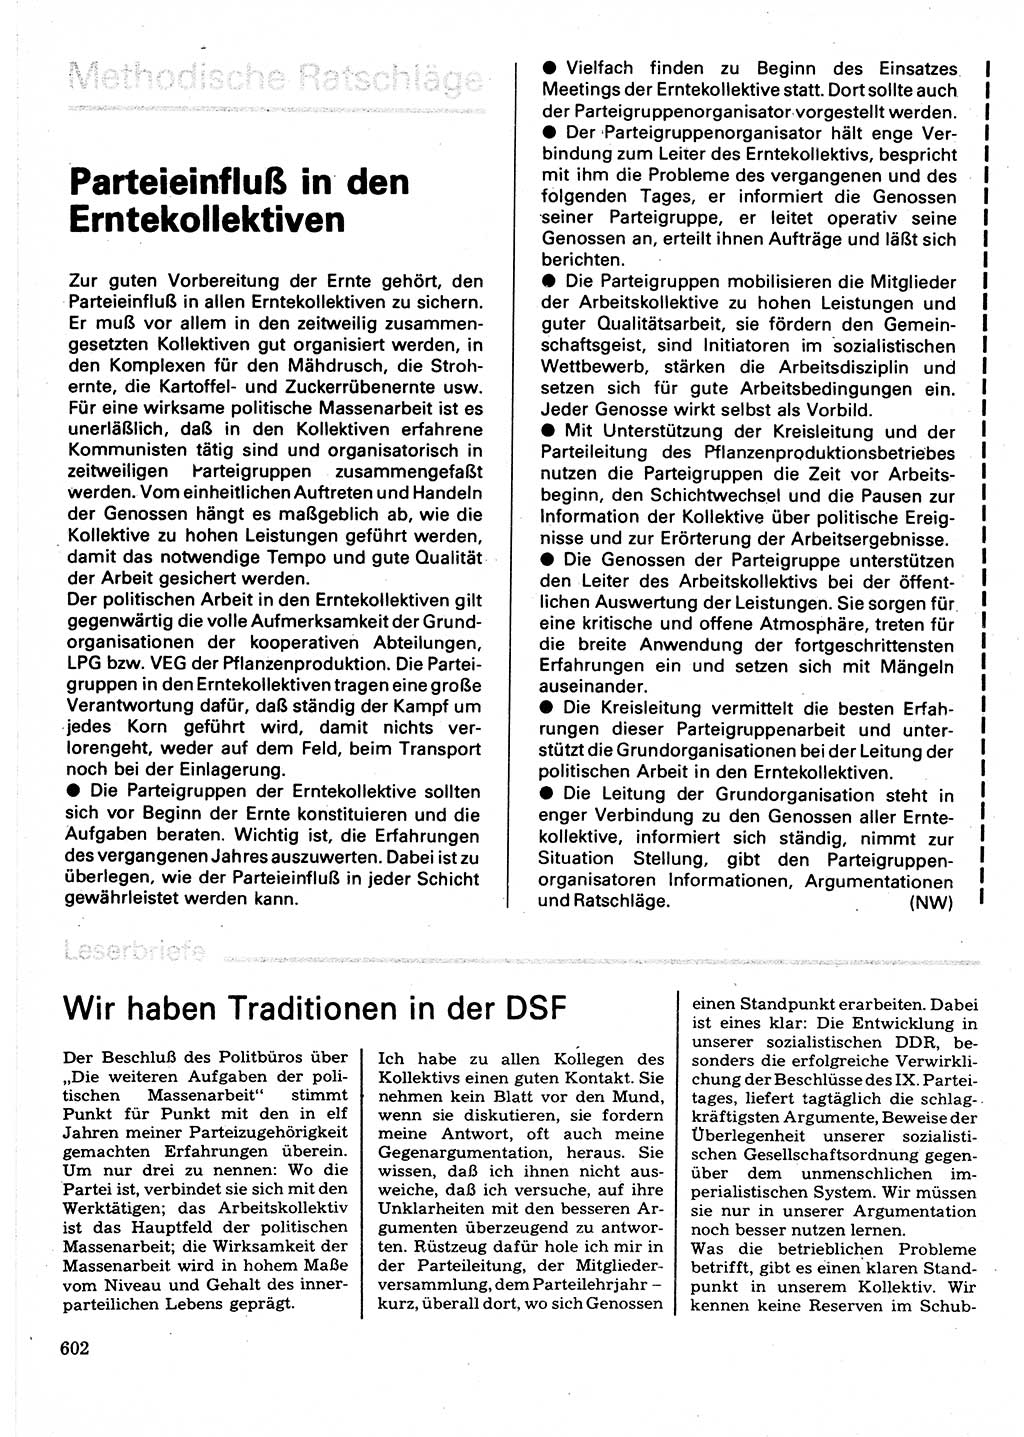 Neuer Weg (NW), Organ des Zentralkomitees (ZK) der SED (Sozialistische Einheitspartei Deutschlands) für Fragen des Parteilebens, 32. Jahrgang [Deutsche Demokratische Republik (DDR)] 1977, Seite 602 (NW ZK SED DDR 1977, S. 602)